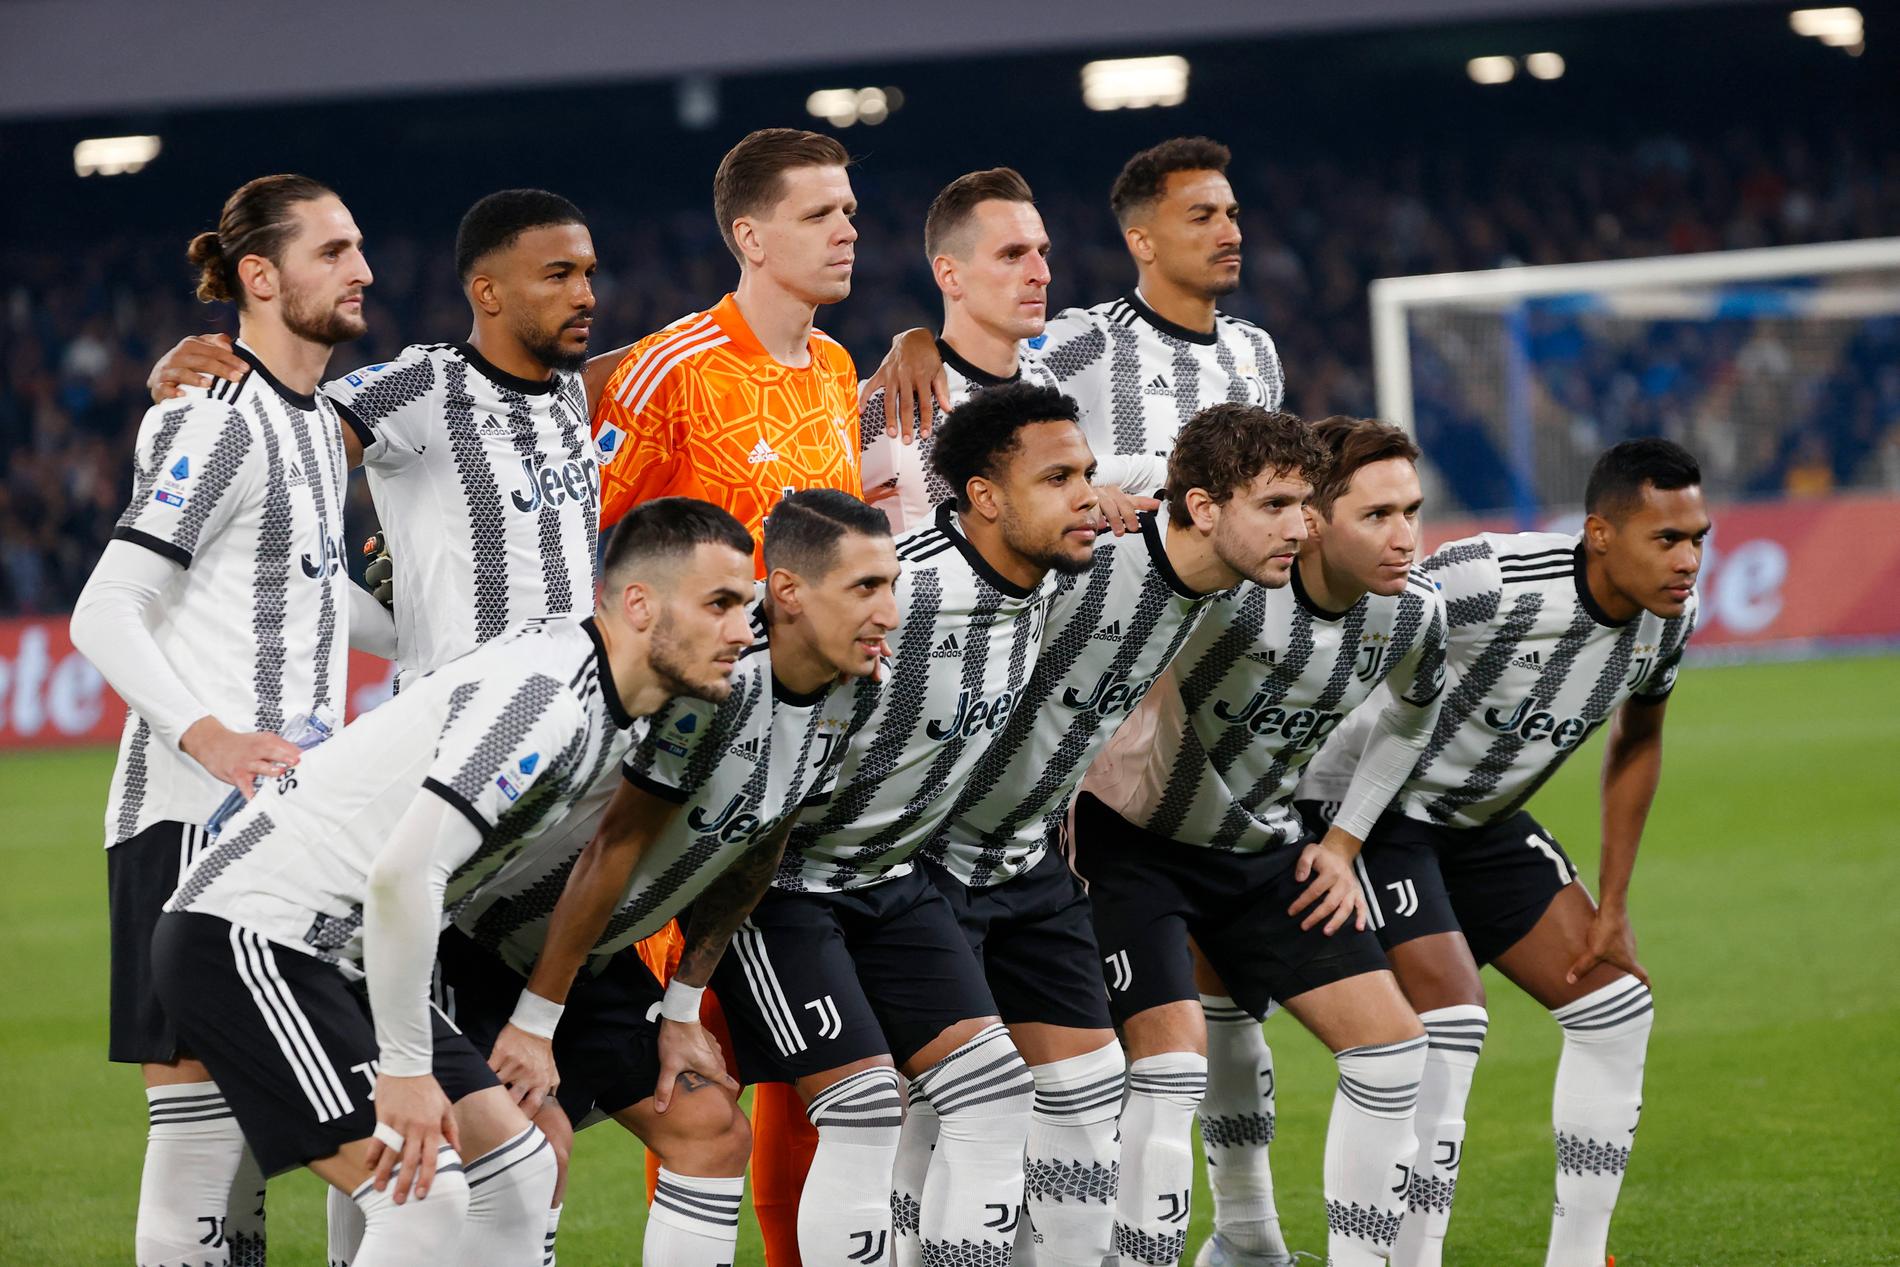 La Juventus ha pareggiato dieci punti e la Champions League è in pericolo per il grande club